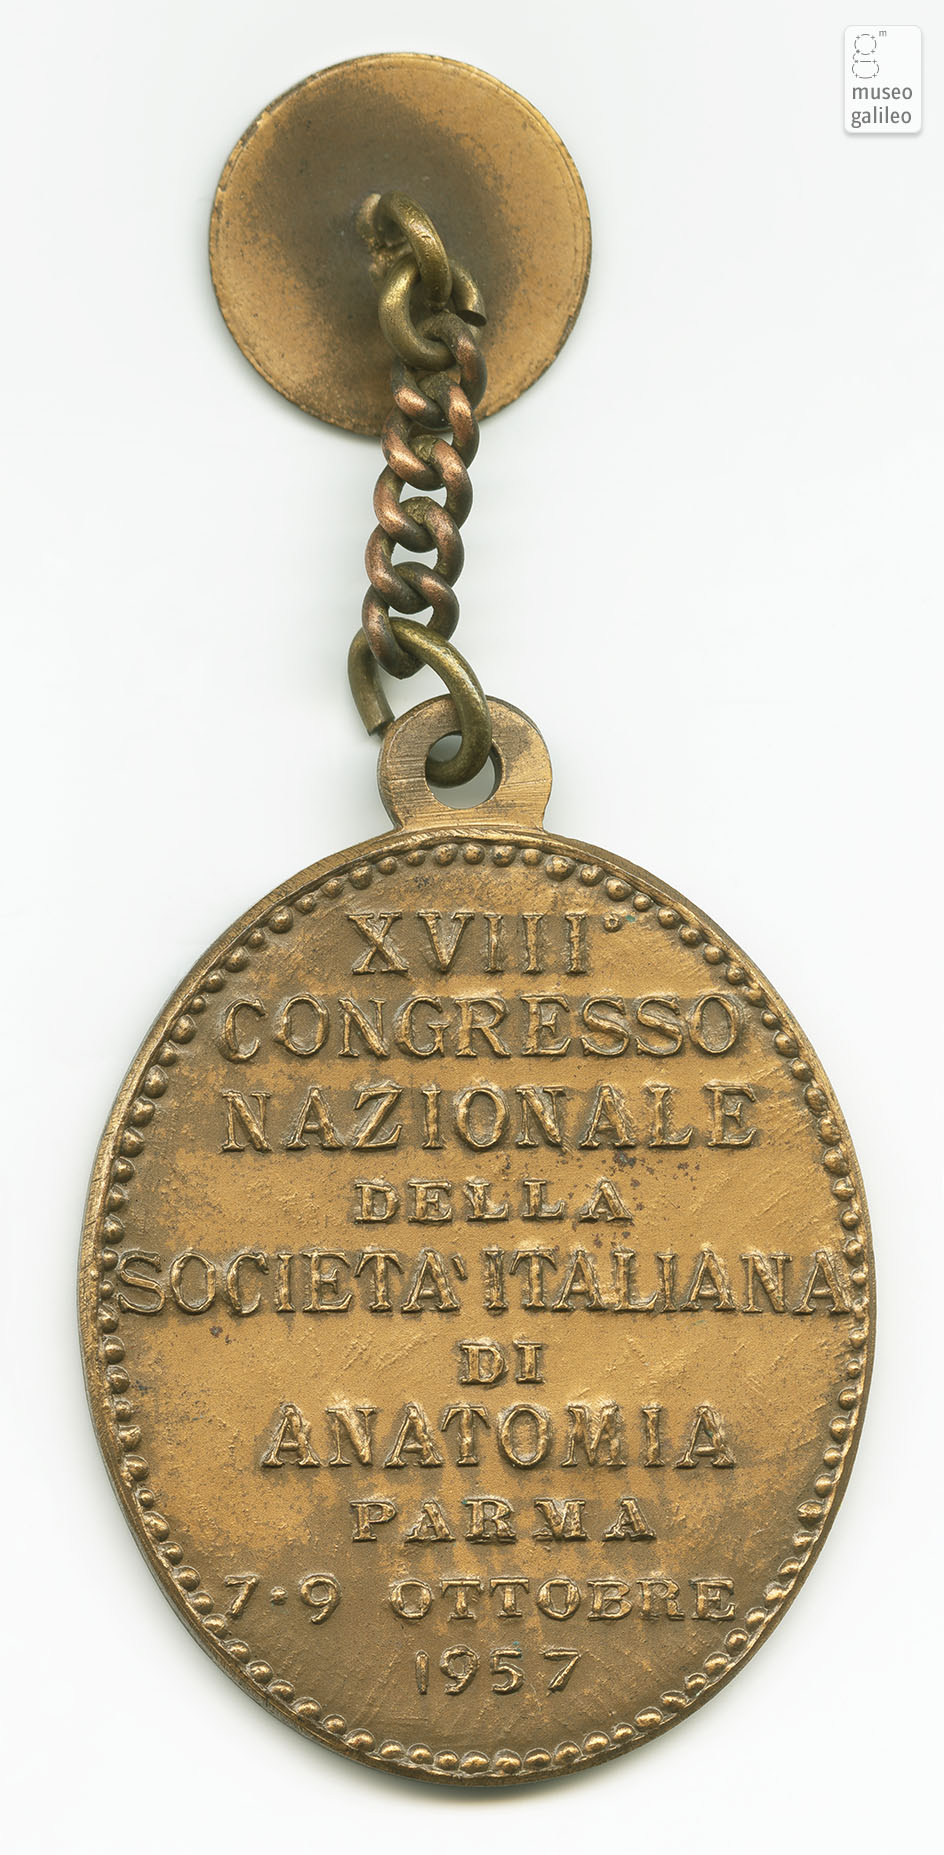 Congresso Nazionale della Società Italiana di Anatomia (Parma, 1957) - rovescio